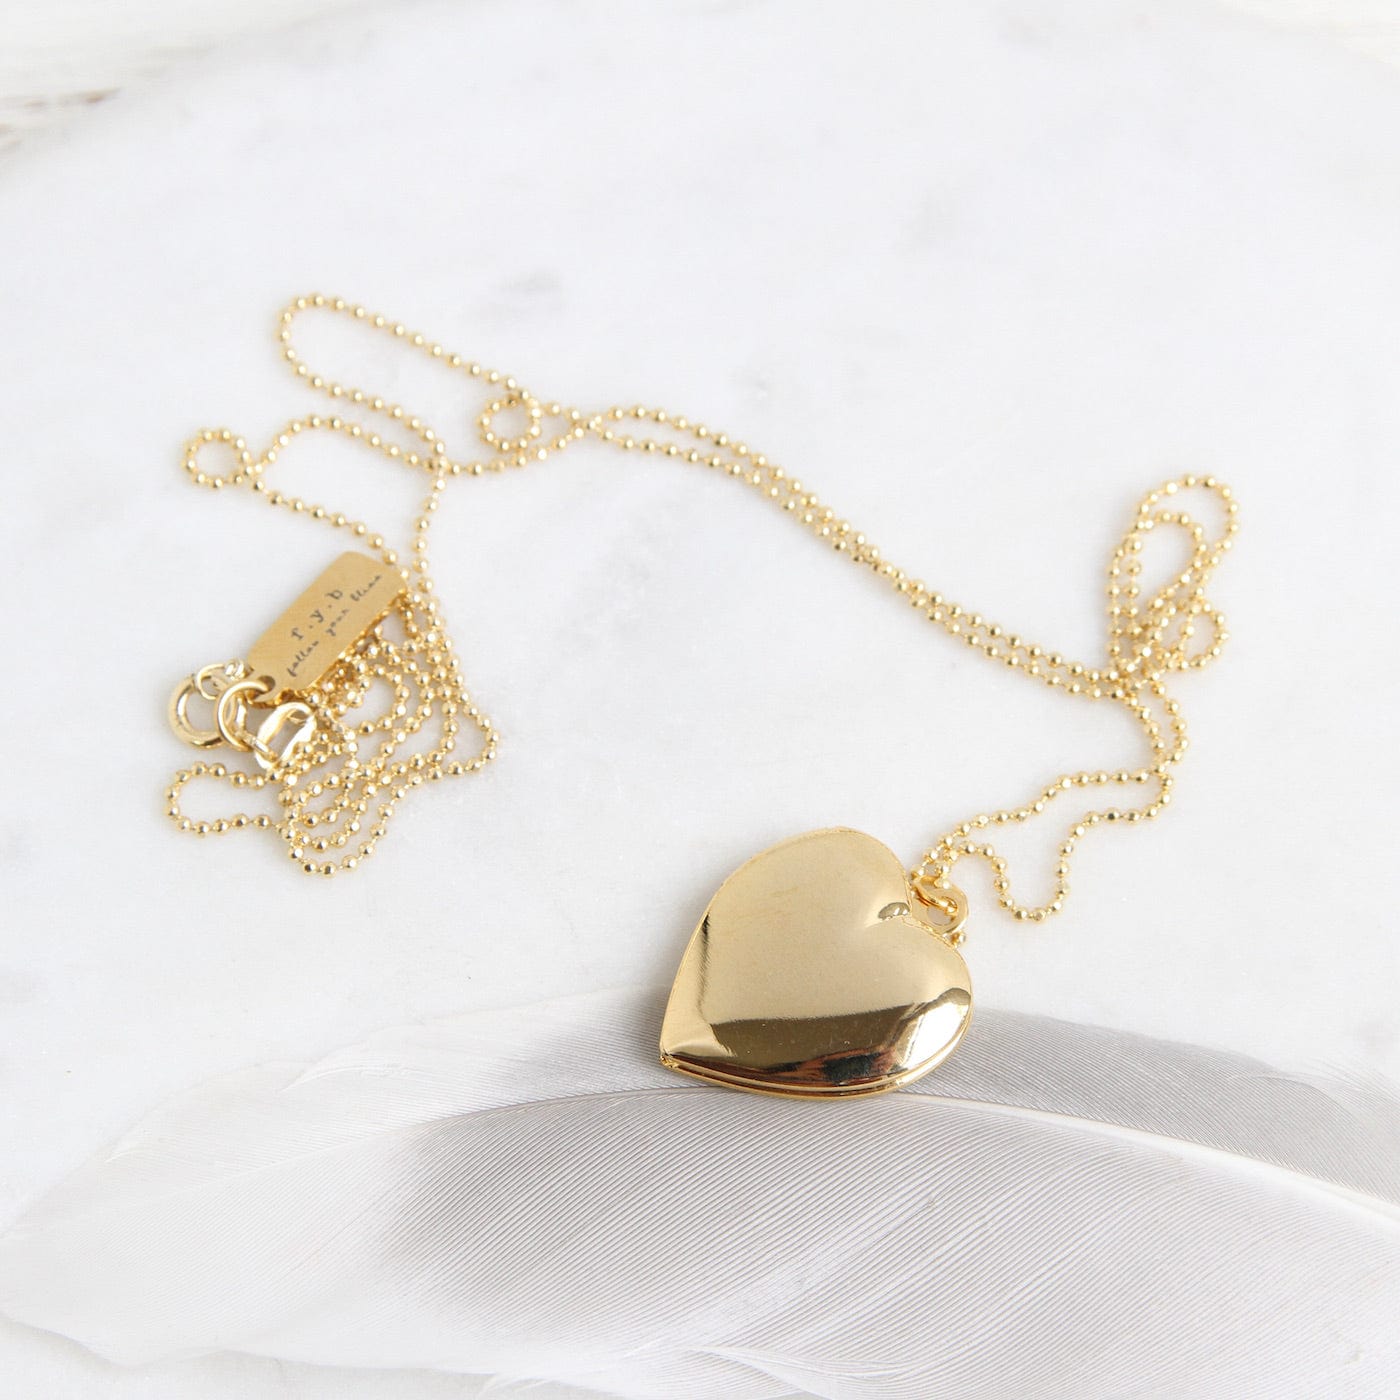 NKL-GPL Vintage Heart Locket Necklace